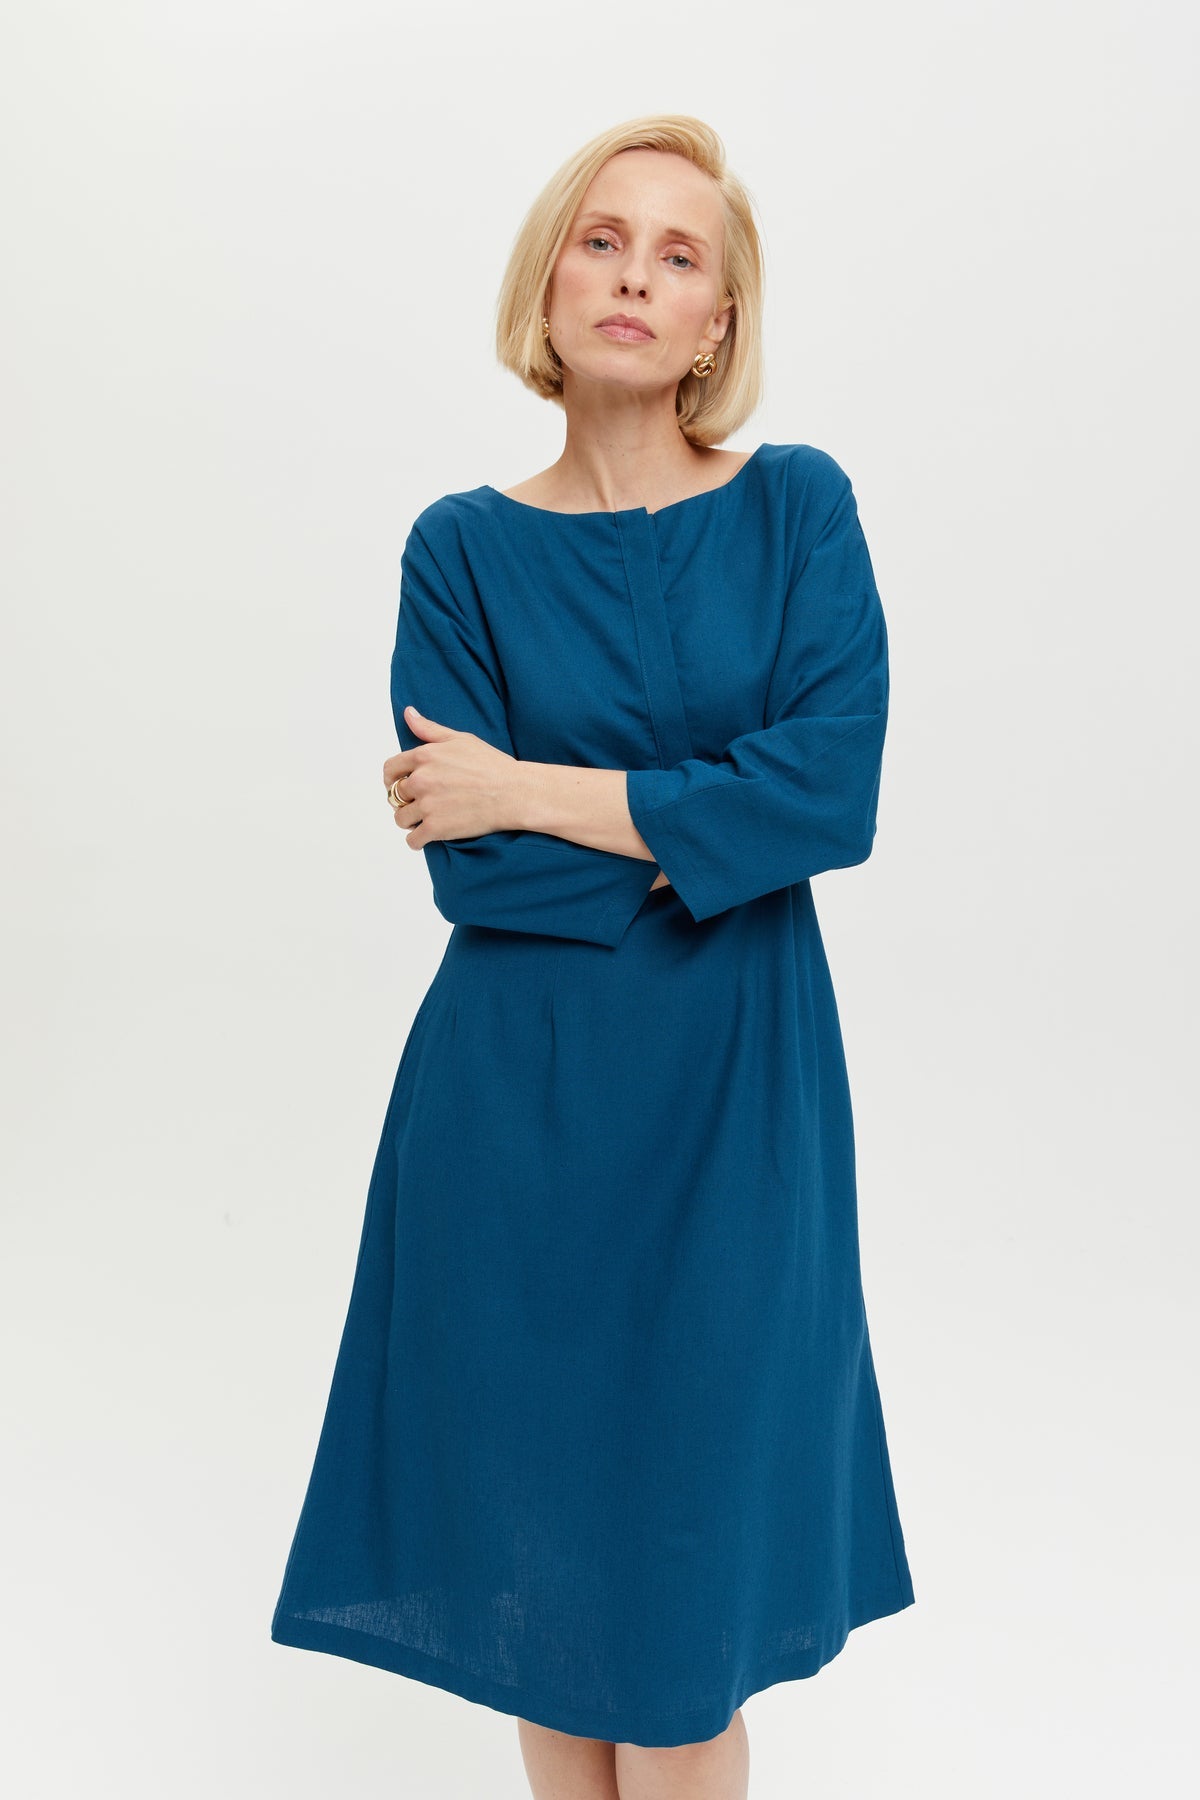 Lusin | Midi-Leinenkleid mit Knopfleiste in Petrol-Blau von Ayani